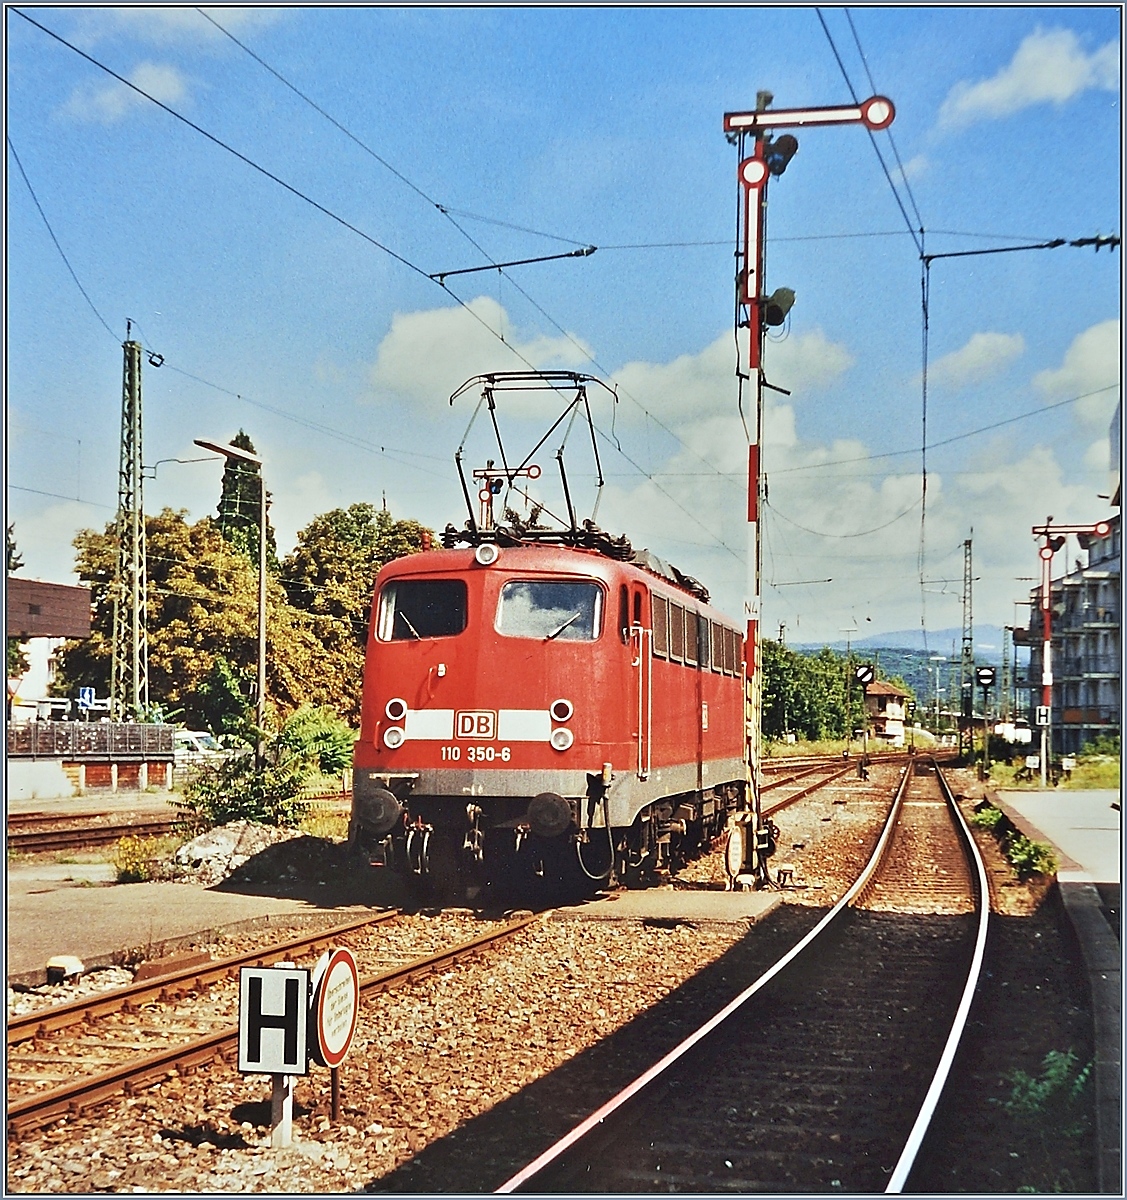 Im August 2002 rangierte die DB 110 350-6 im noch mit Formsignalen ausgestatteten Bahnhof von Lörrach (um dann einen Nahverkehrszug nach Freiburg zu übernehmen).
(Analogbild vom Aug. 2002